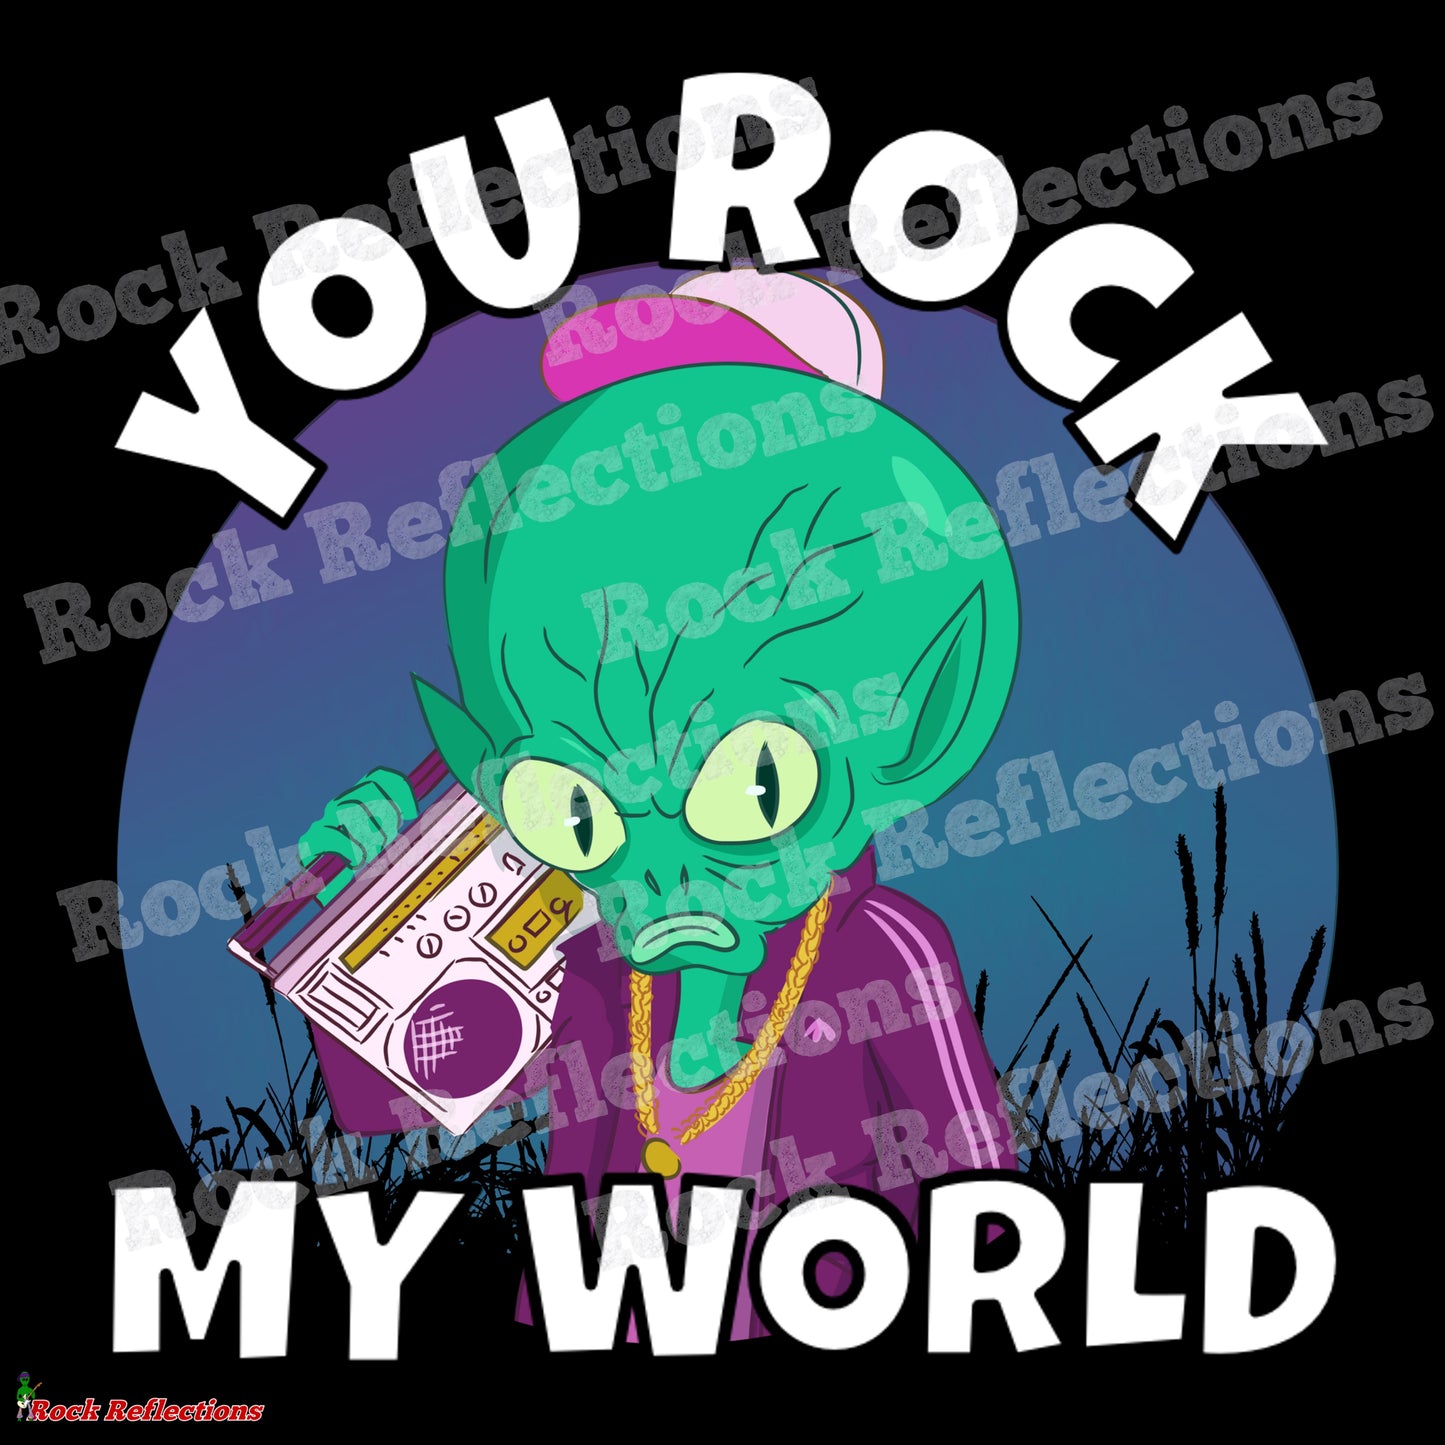 Alien - You Rock My World SPOD